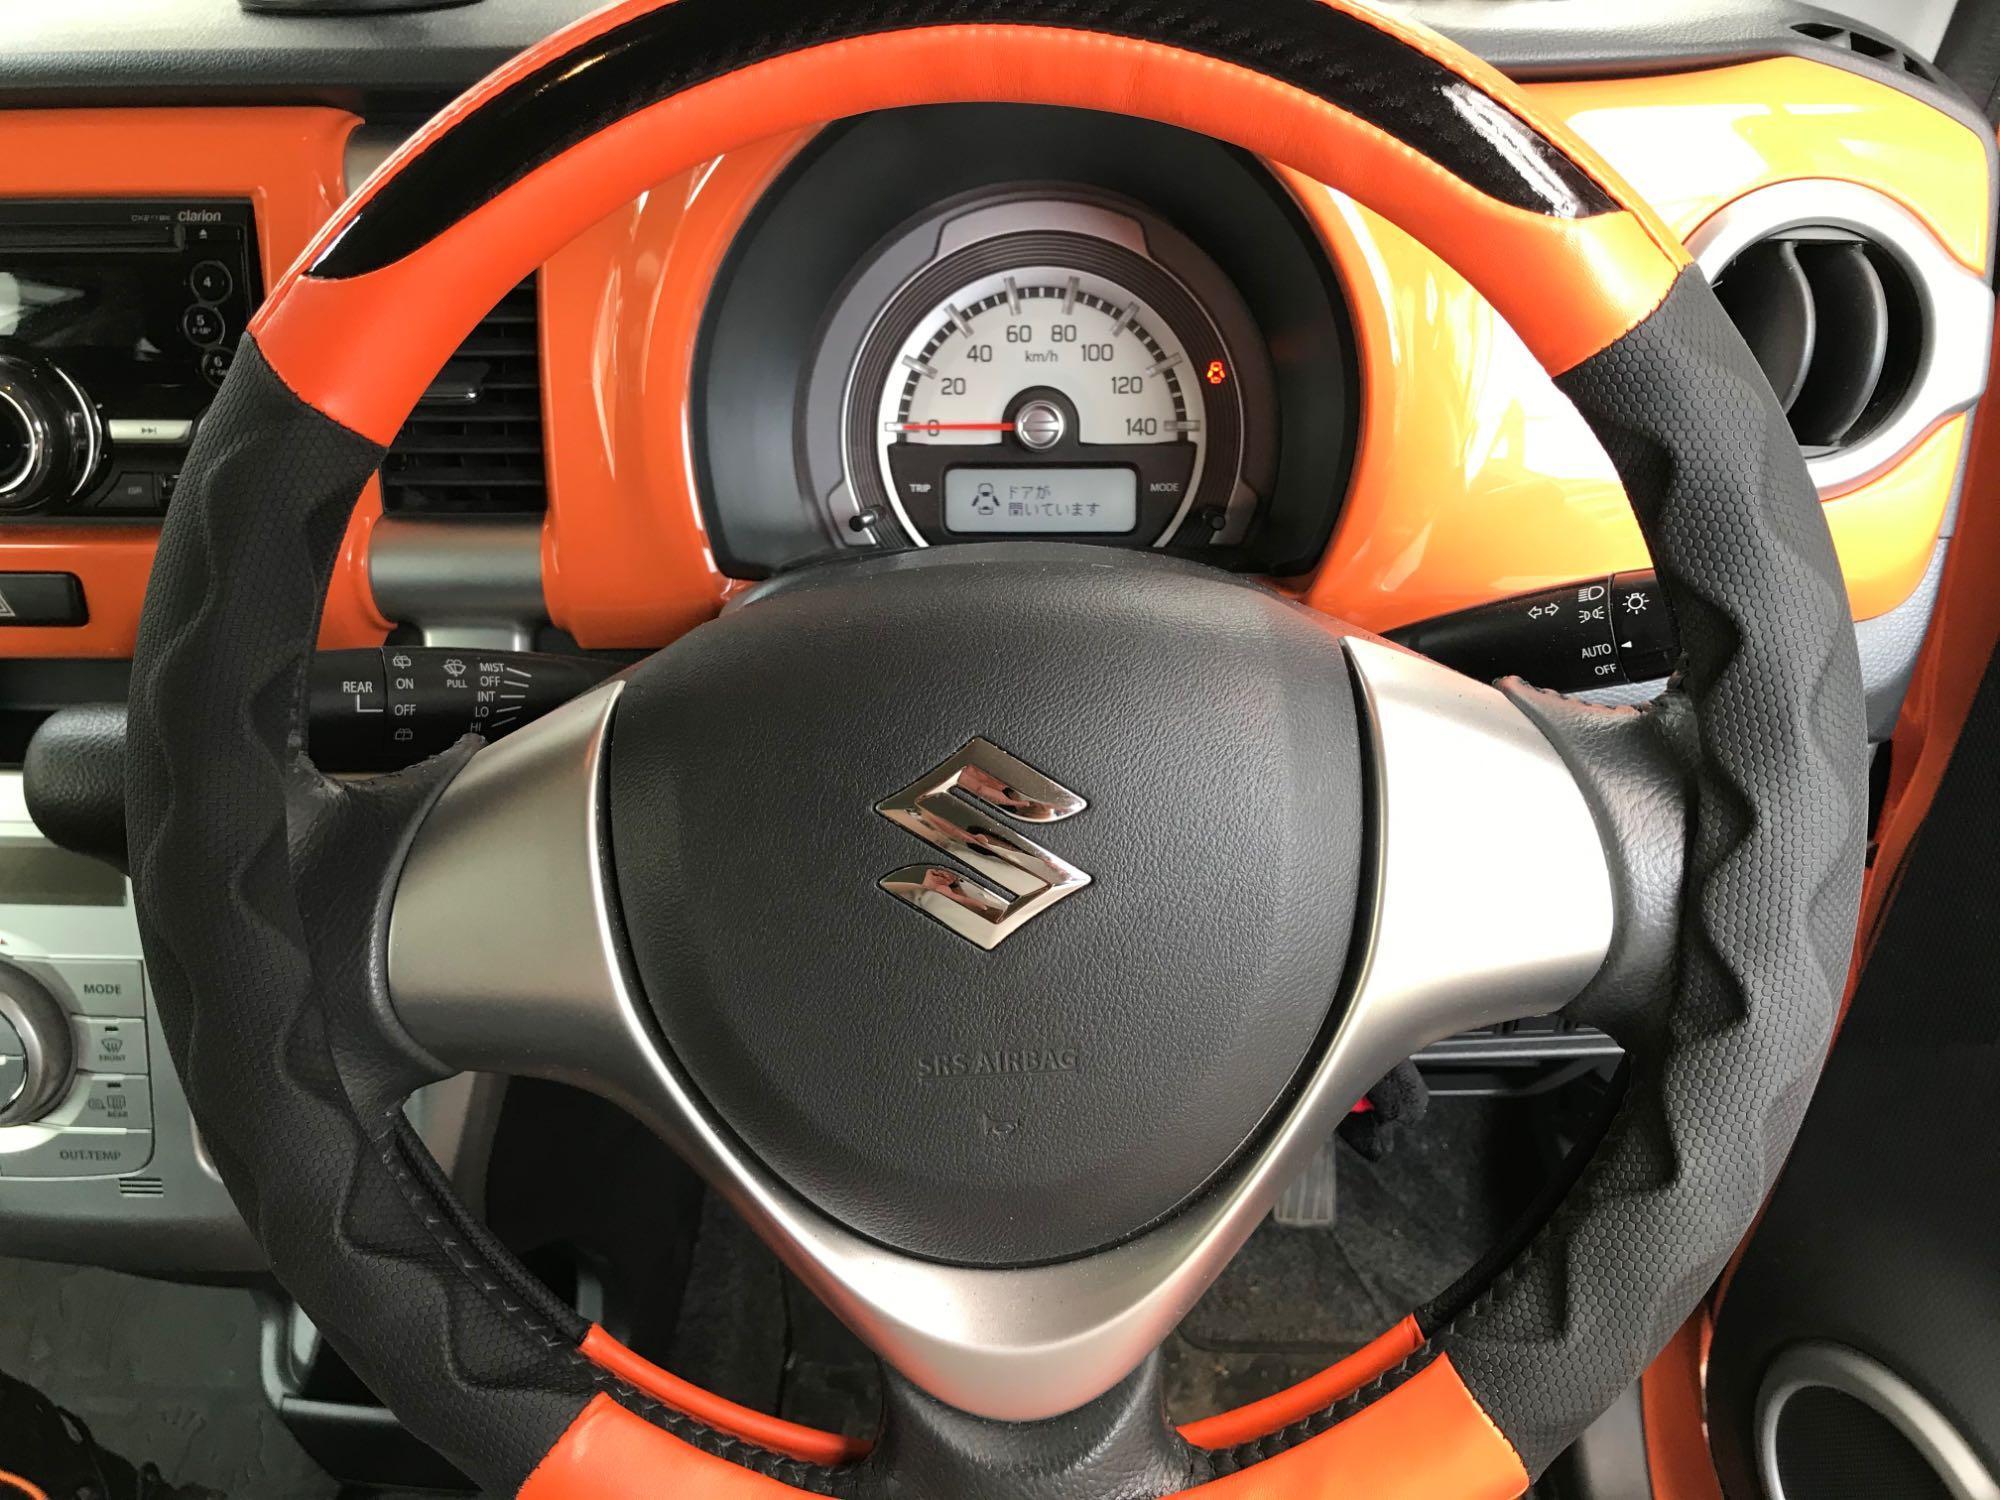 ホライゾン ハンドルカバー 軽自動車 レッド ブルー ブラック ホワイト イエロー オレンジ Sサイズ36.5〜37.9cm フェリスヴィータ セール